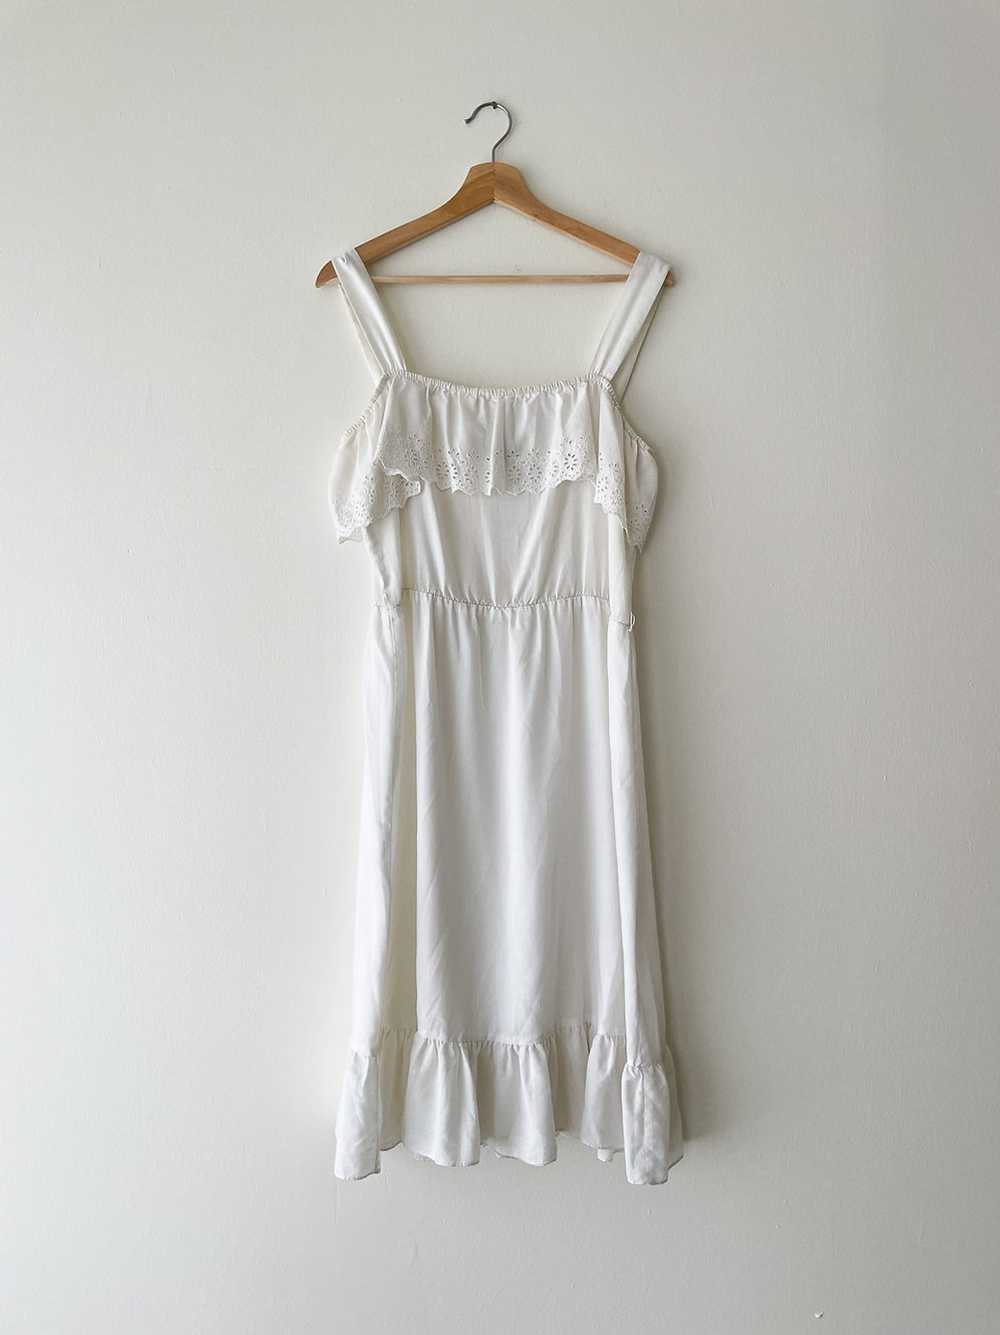 Cotton Eyelet Dress - image 1